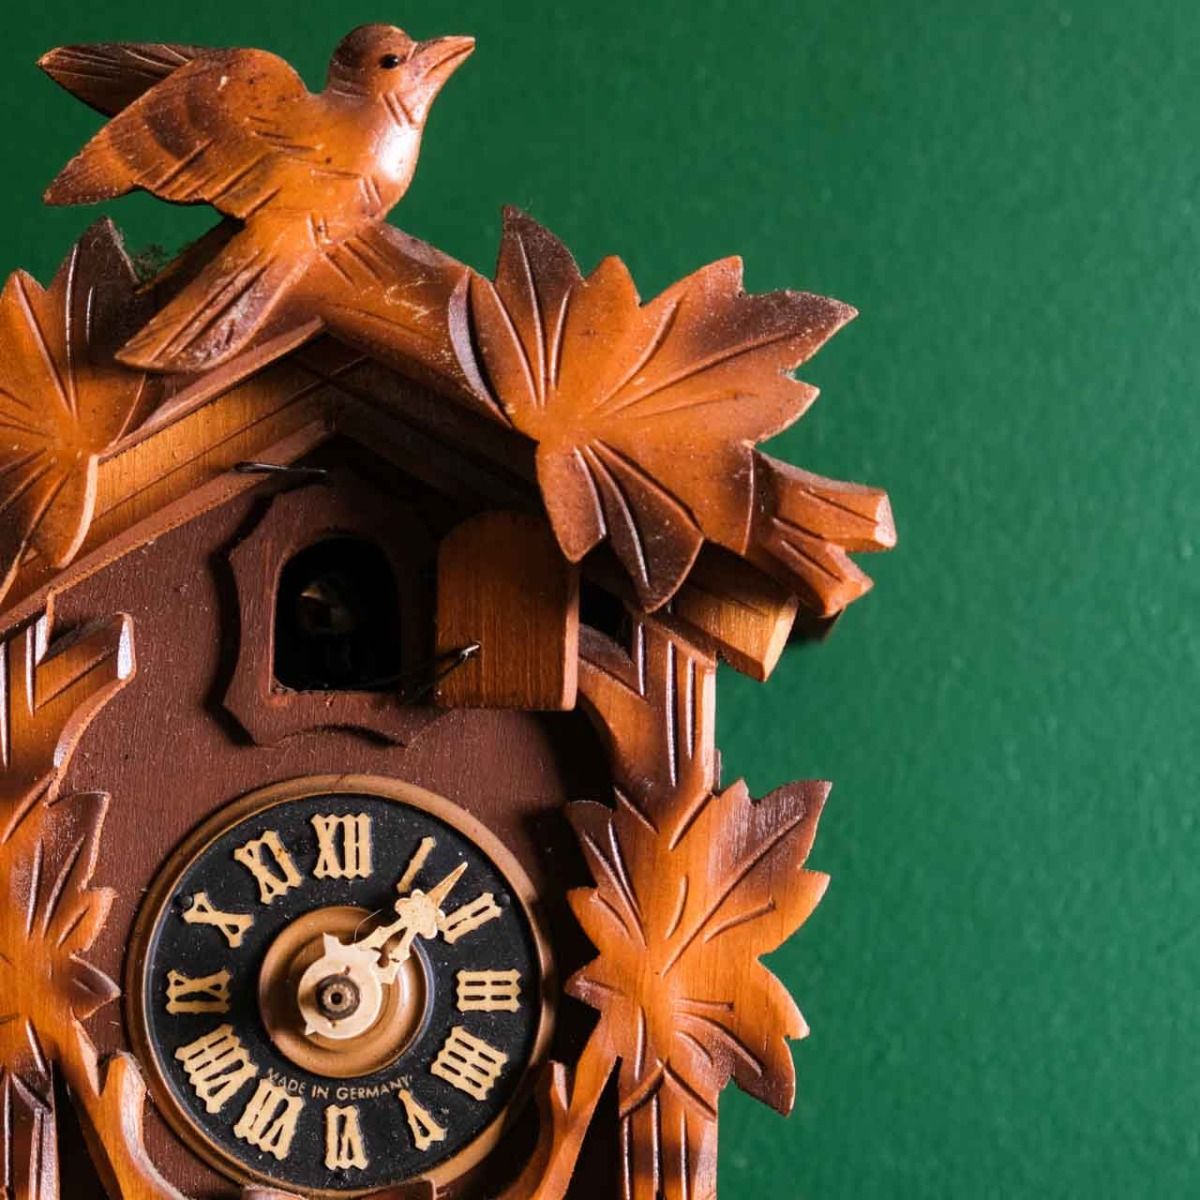 Antique Cuckoo clock,Vintage German wooden cuckoo clock.